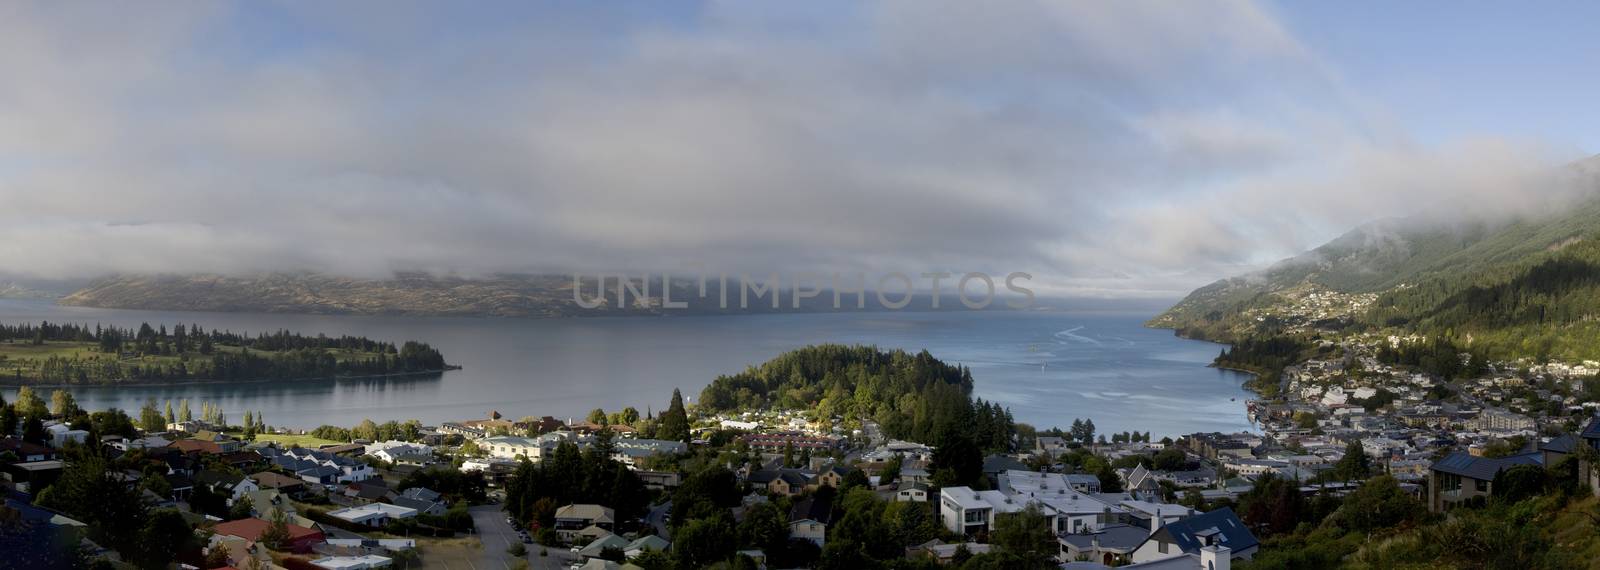 Queenstown New Zealand by pictureguy